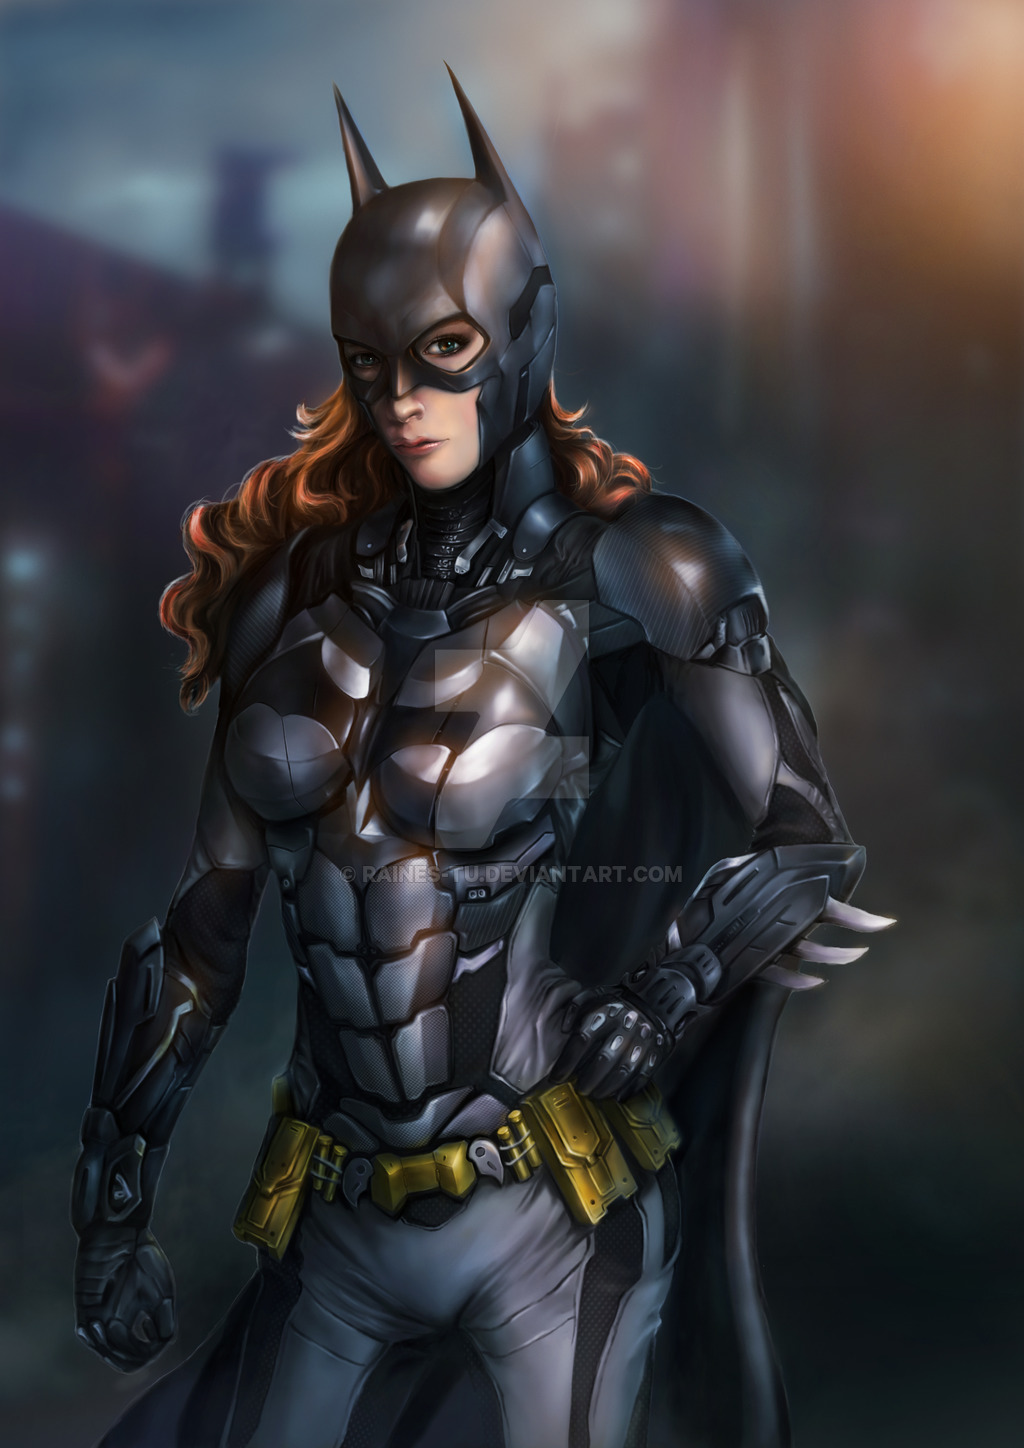 45+] Batman Arkham Knight Batgirl Wallpaper - WallpaperSafari